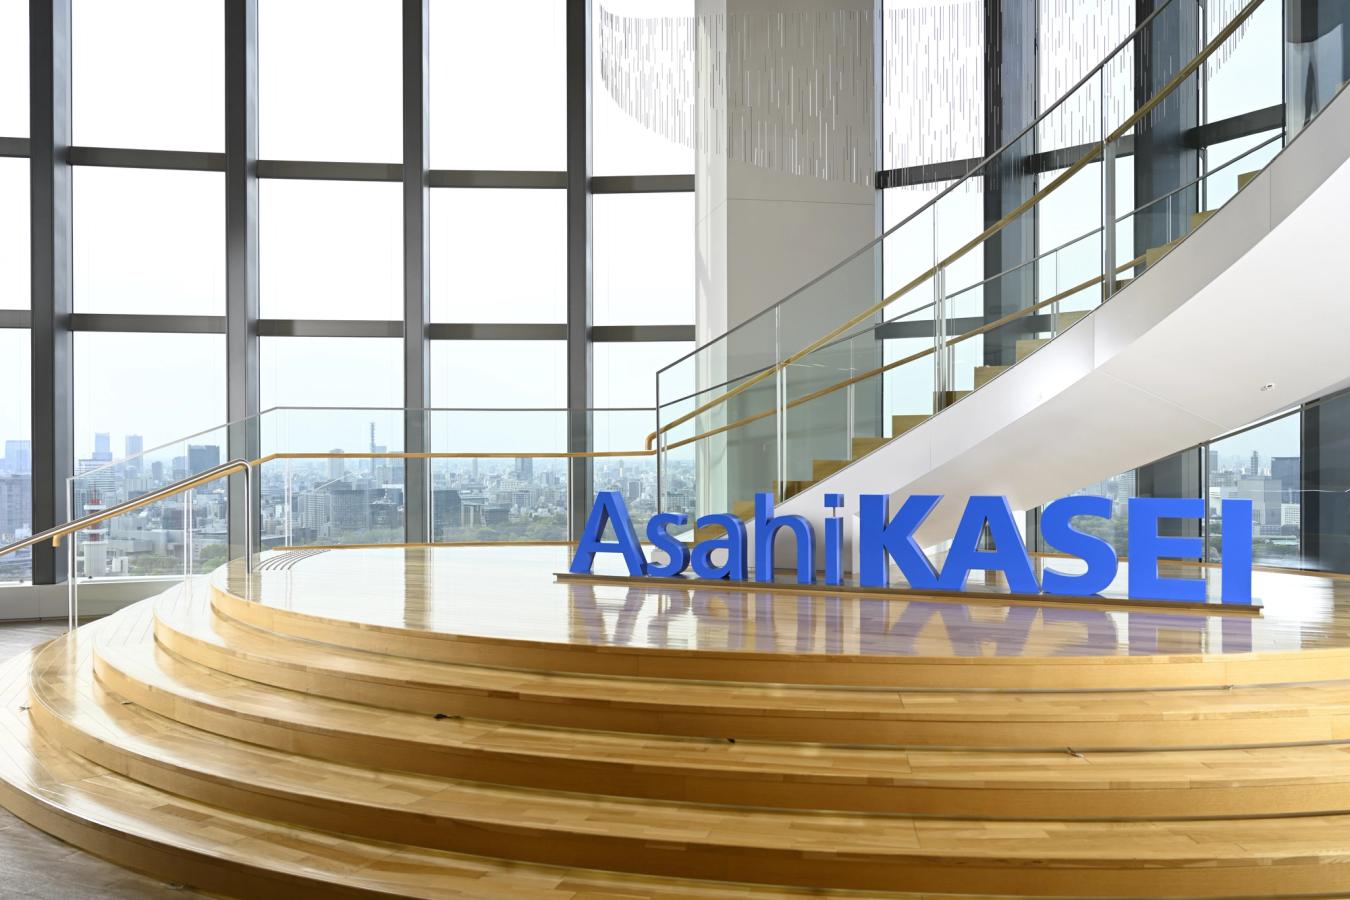 Asahi Kasei Corporation: Creando una plataforma de aprendizaje para fomentar el crecimiento autónomo y el desarrollo profesional de los empleados